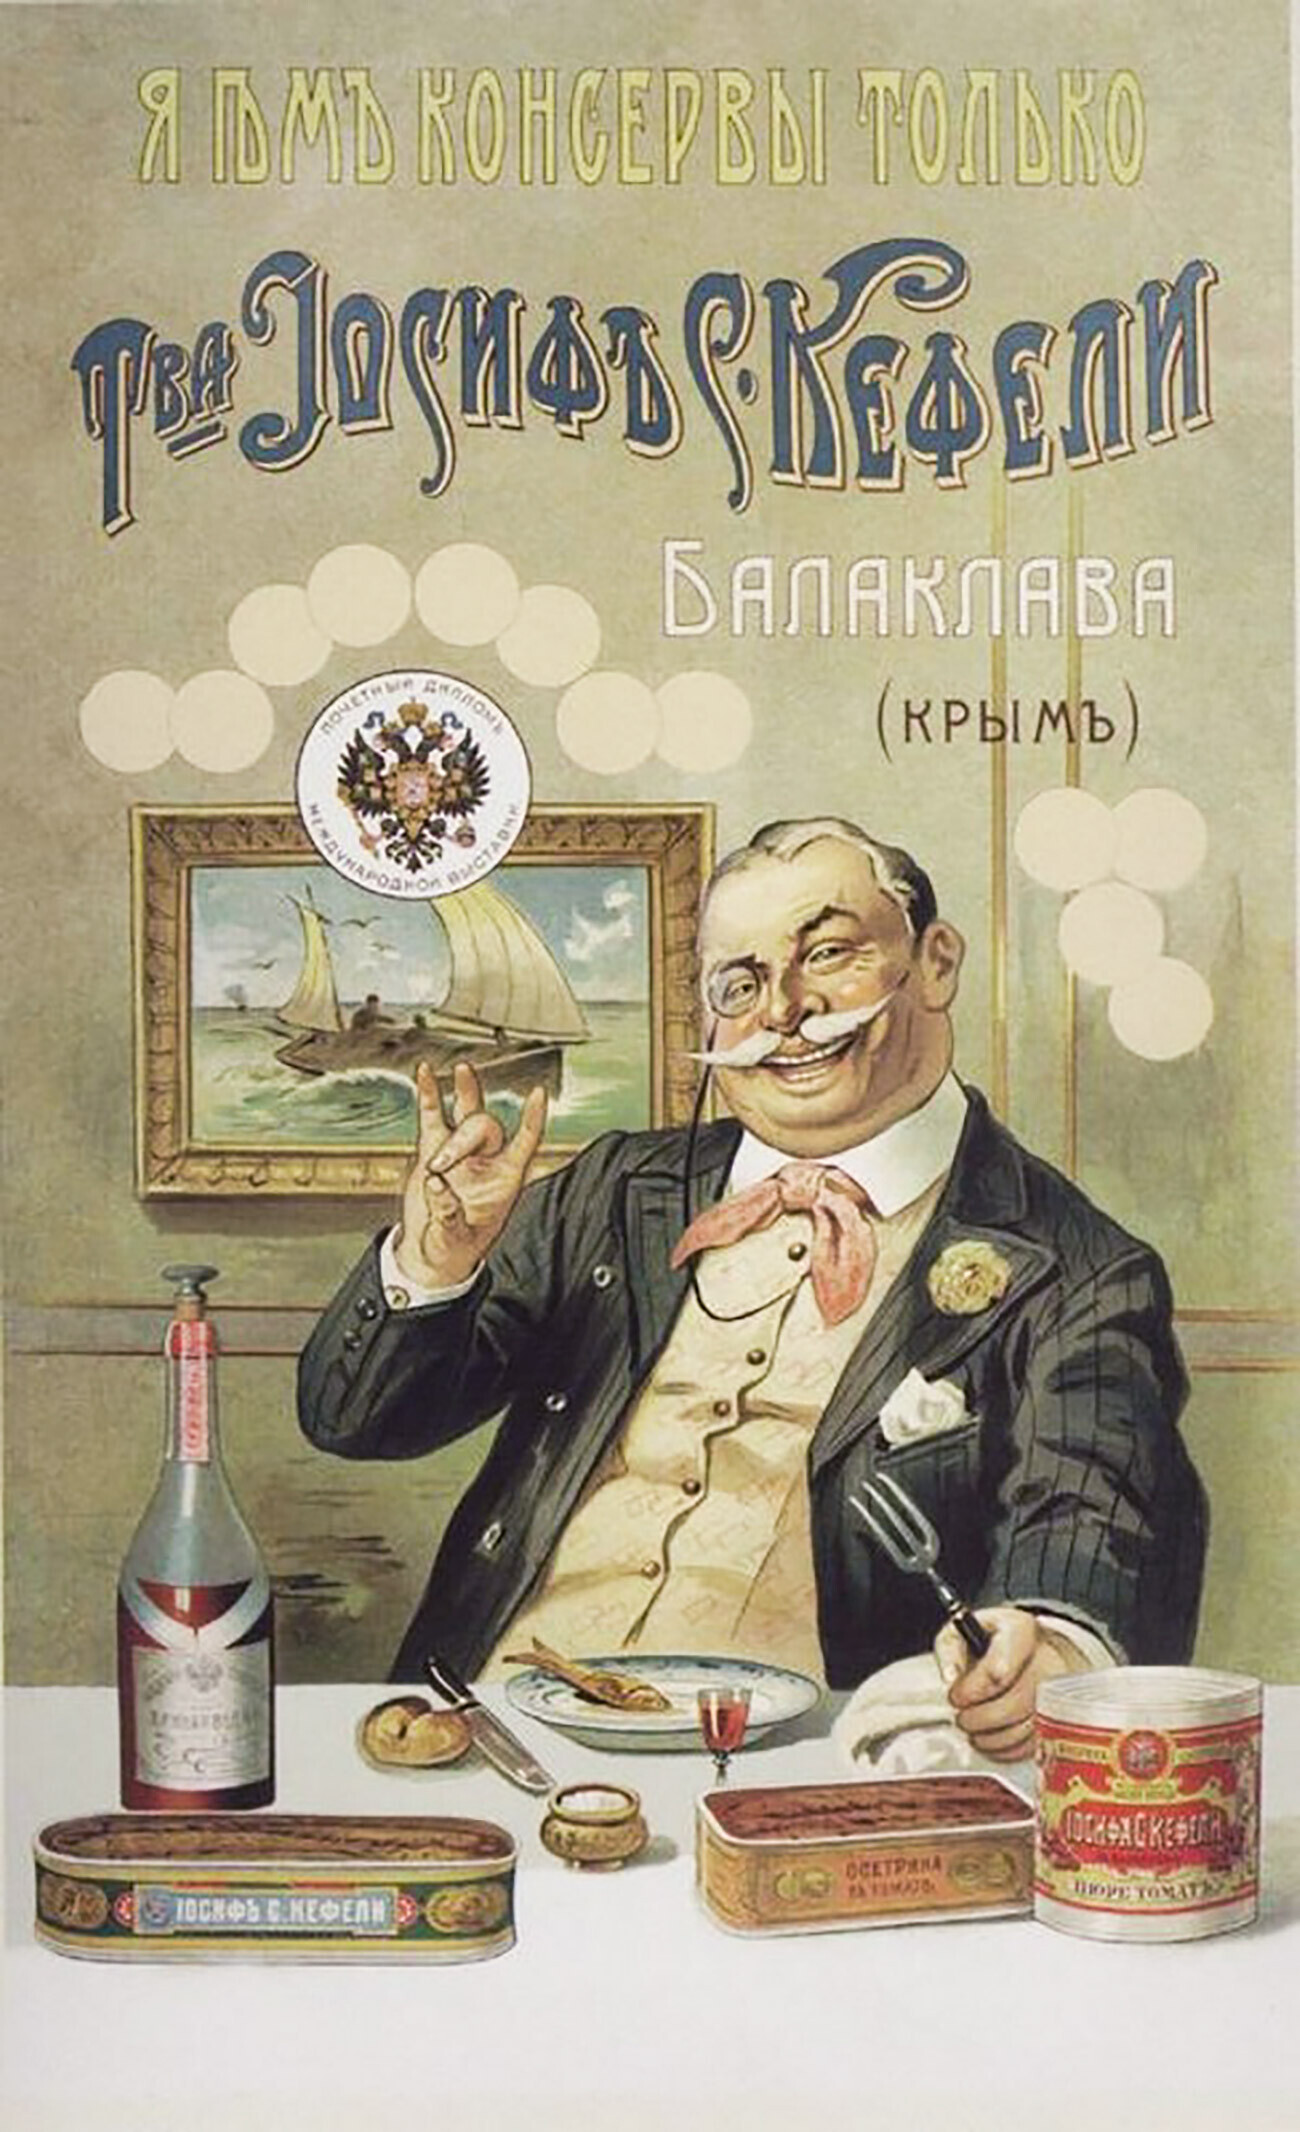 Cartel publicitario de las conservas de la conservera de Joseph Kefeli.